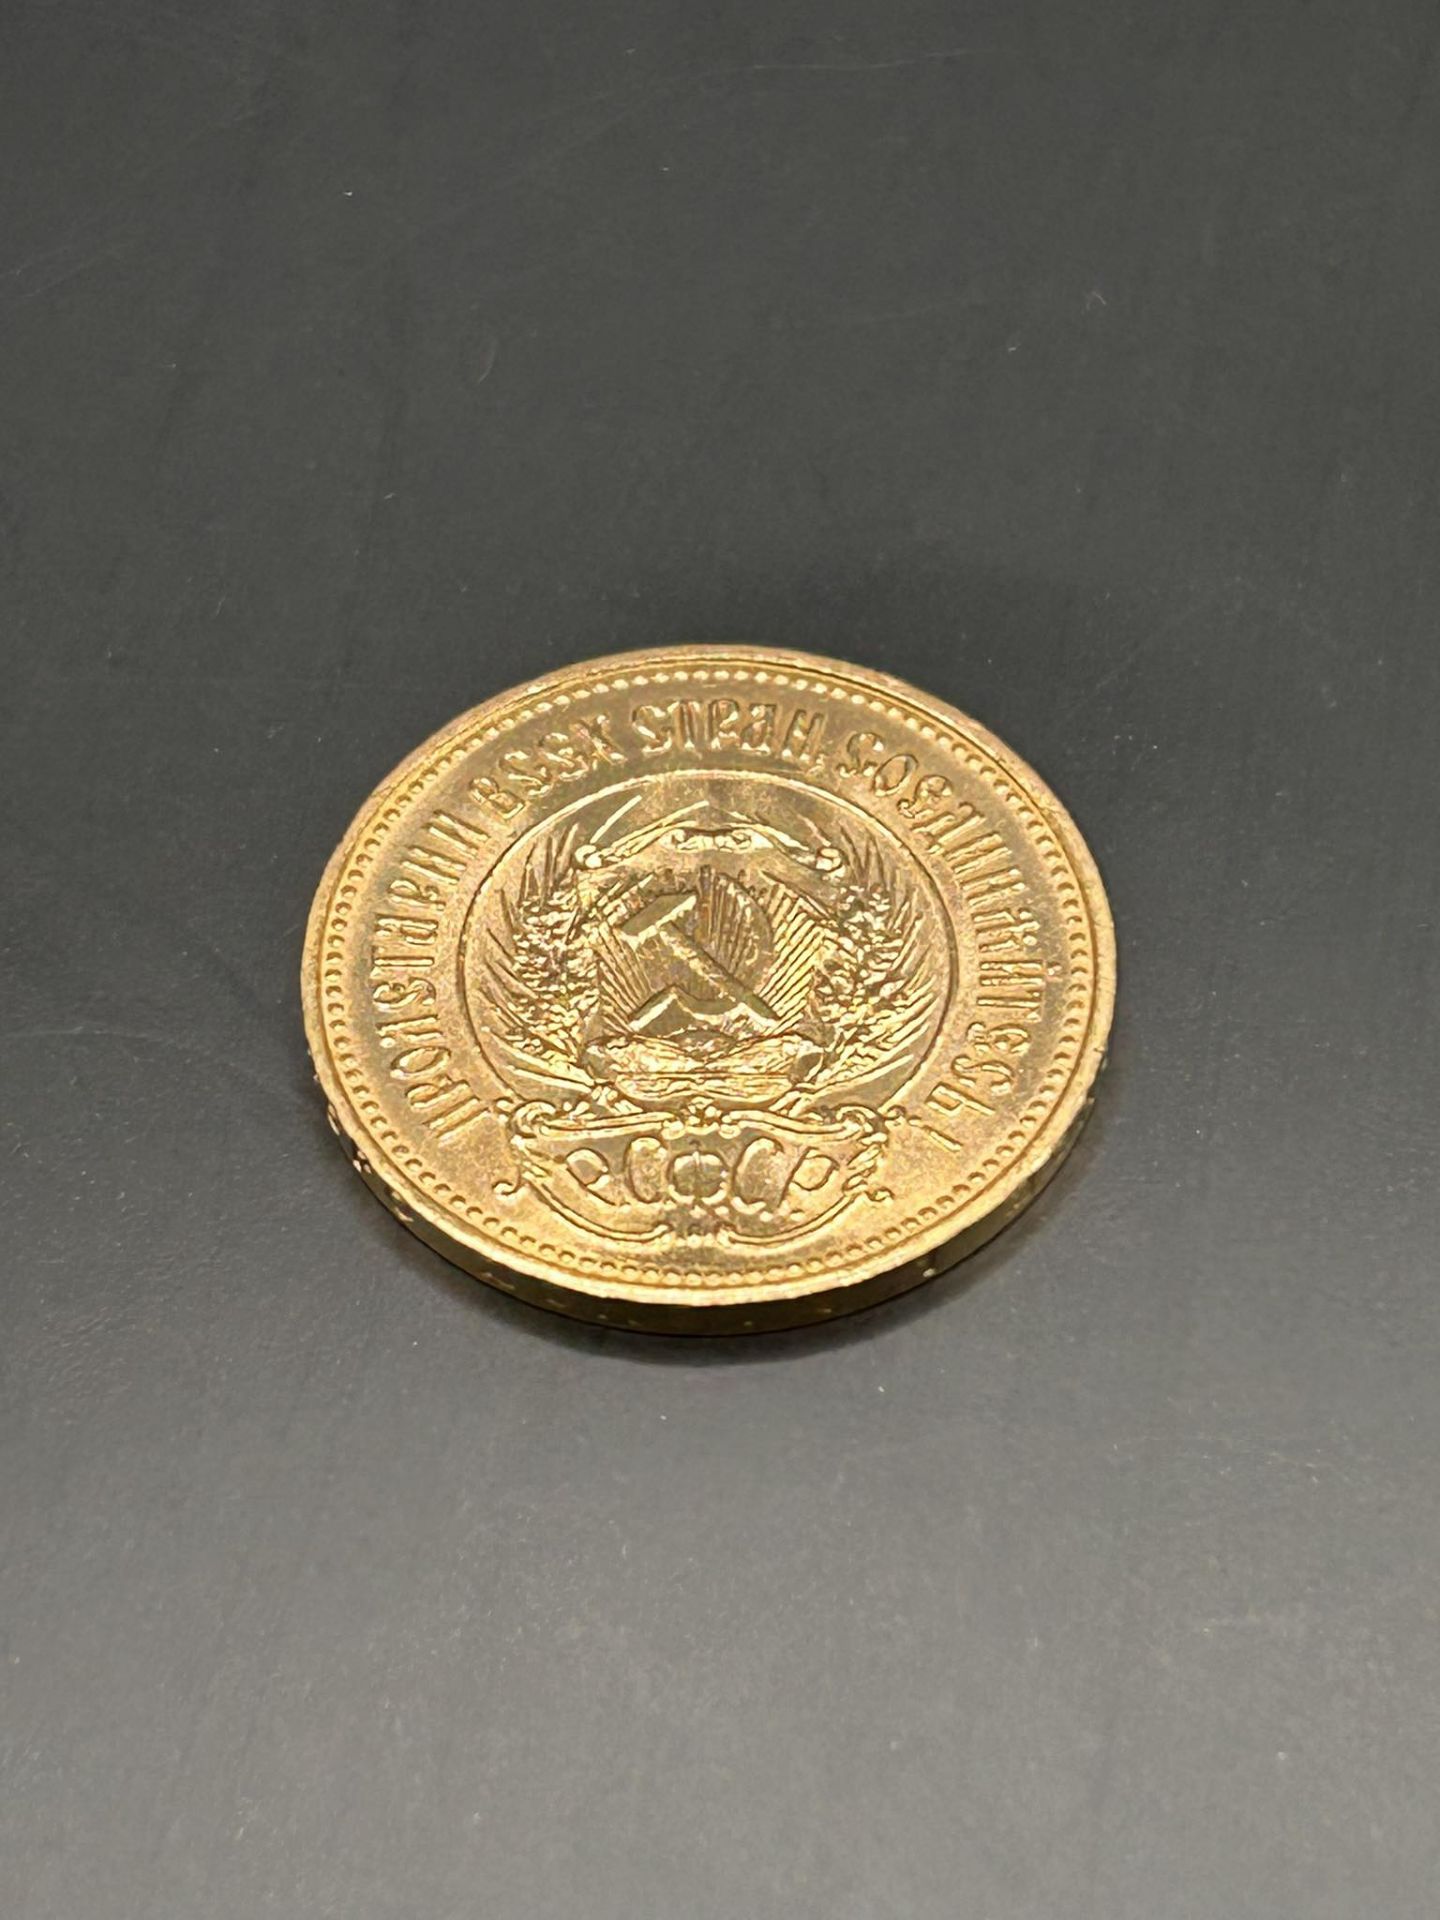 Goldmünze UDSSR - Bild 3 aus 3